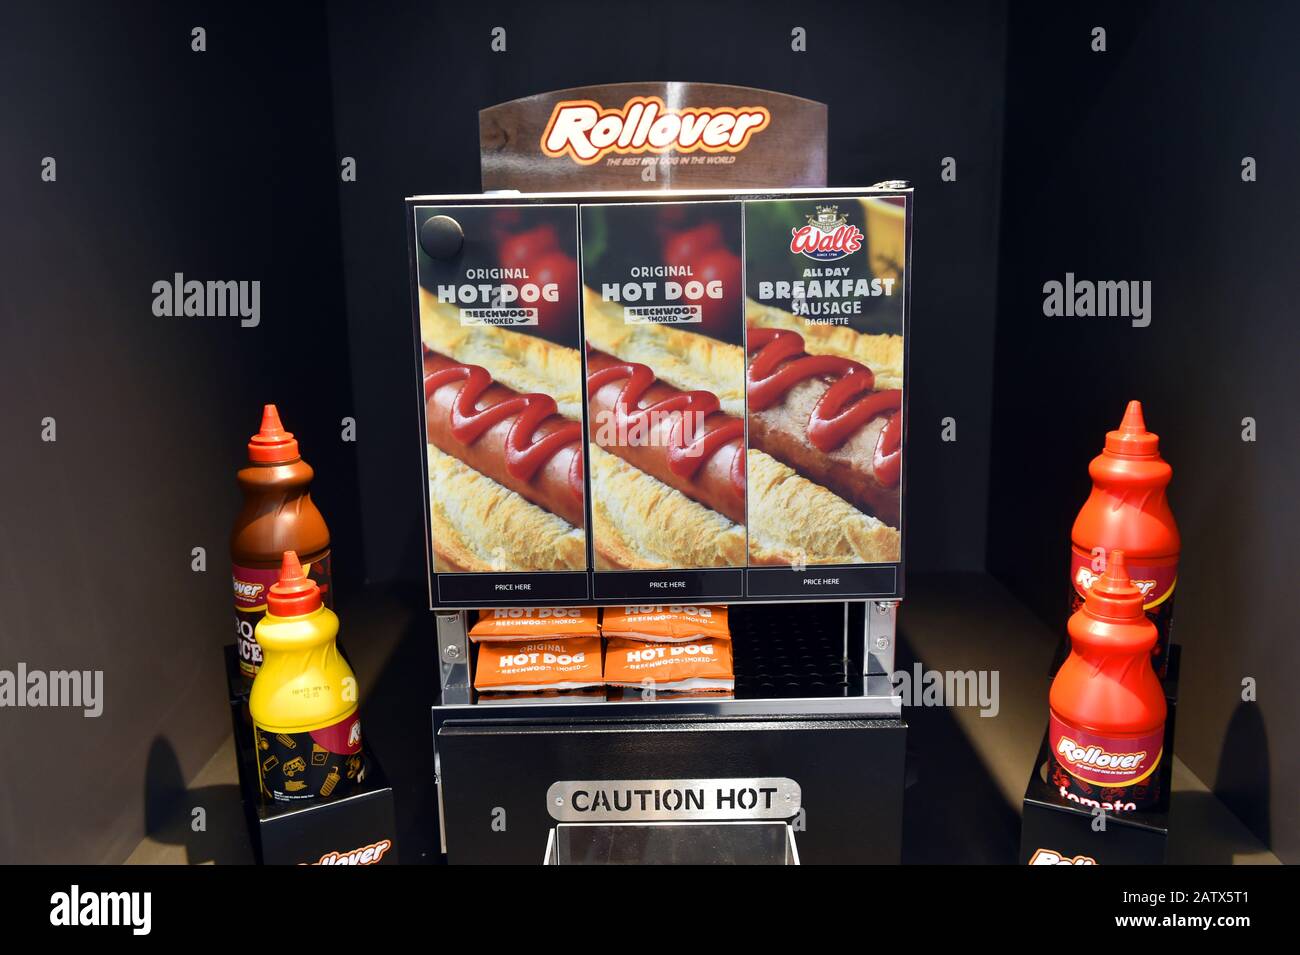 Machine pour hot dog dans un garage, Royaume-Uni Banque D'Images